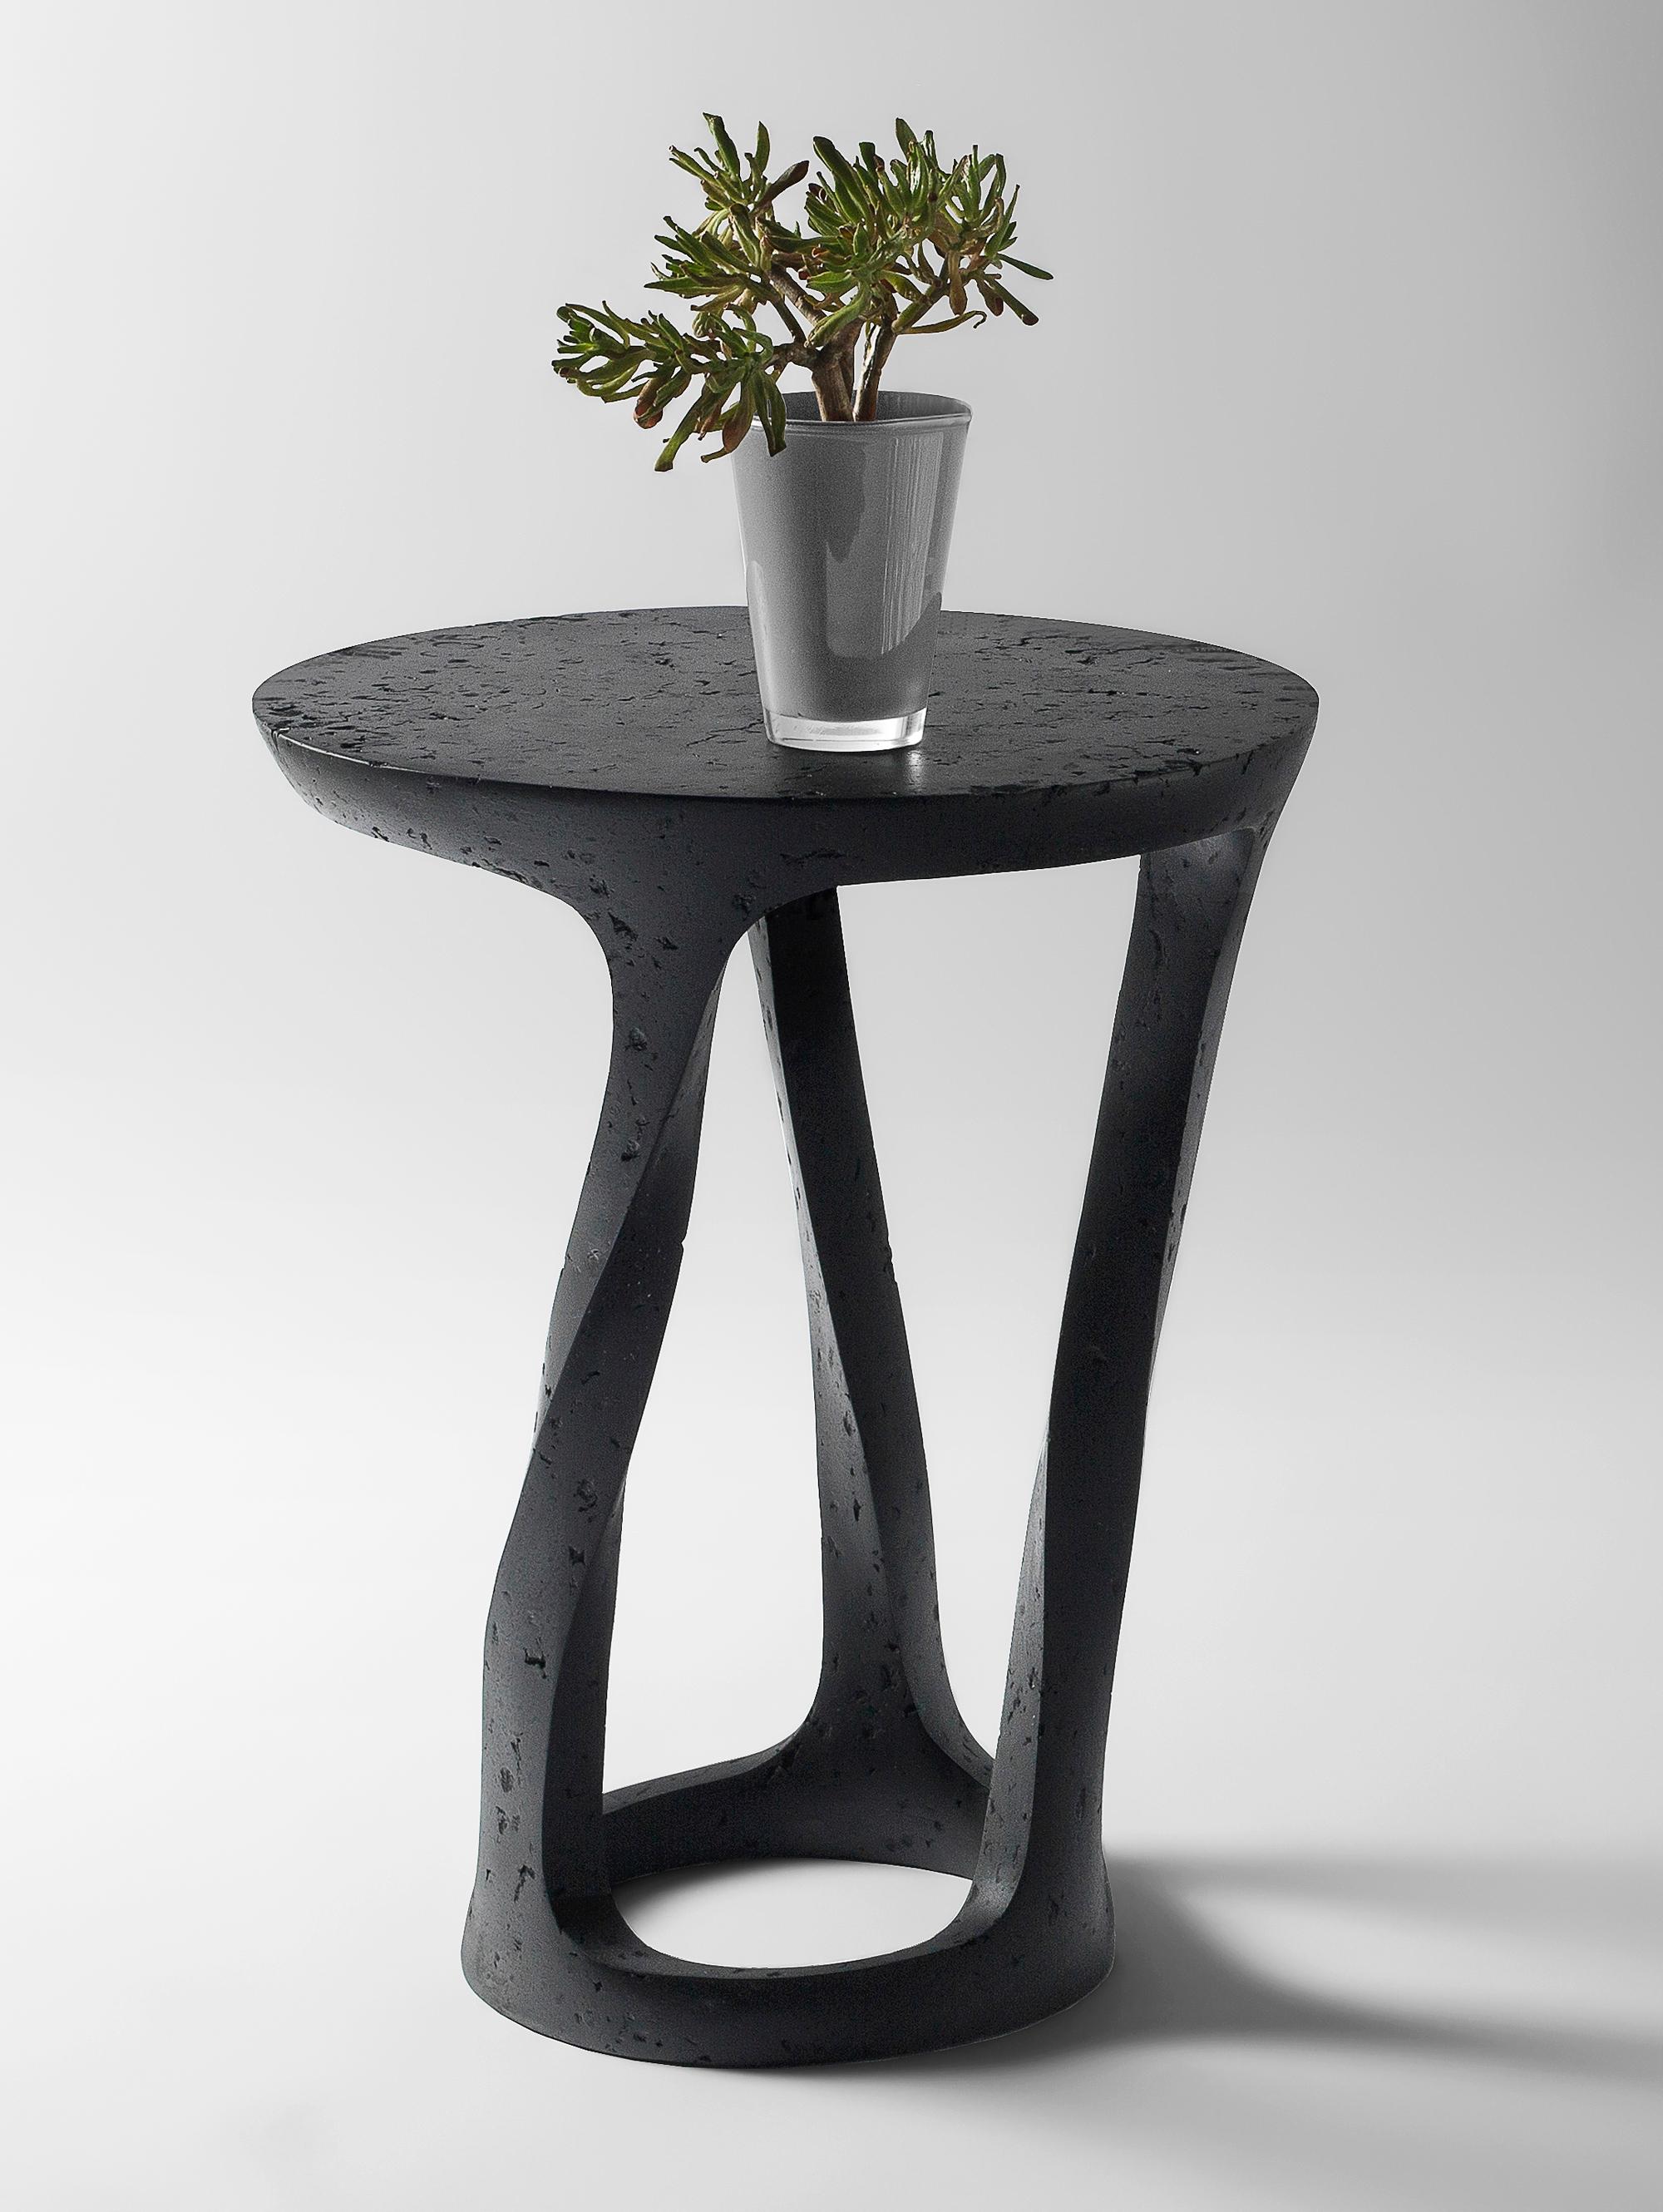 Table d'appoint Bent par Kasanai
Dimensions : D 45 x H 62 cm.
MATERIAL : Ciment, bois, papier recyclé, colle, peinture.
6 kg.

La fusion de la robustesse et de l'élégance, ainsi que le mélange de l'archaïsme et de la modernité. Plus qu'une simple